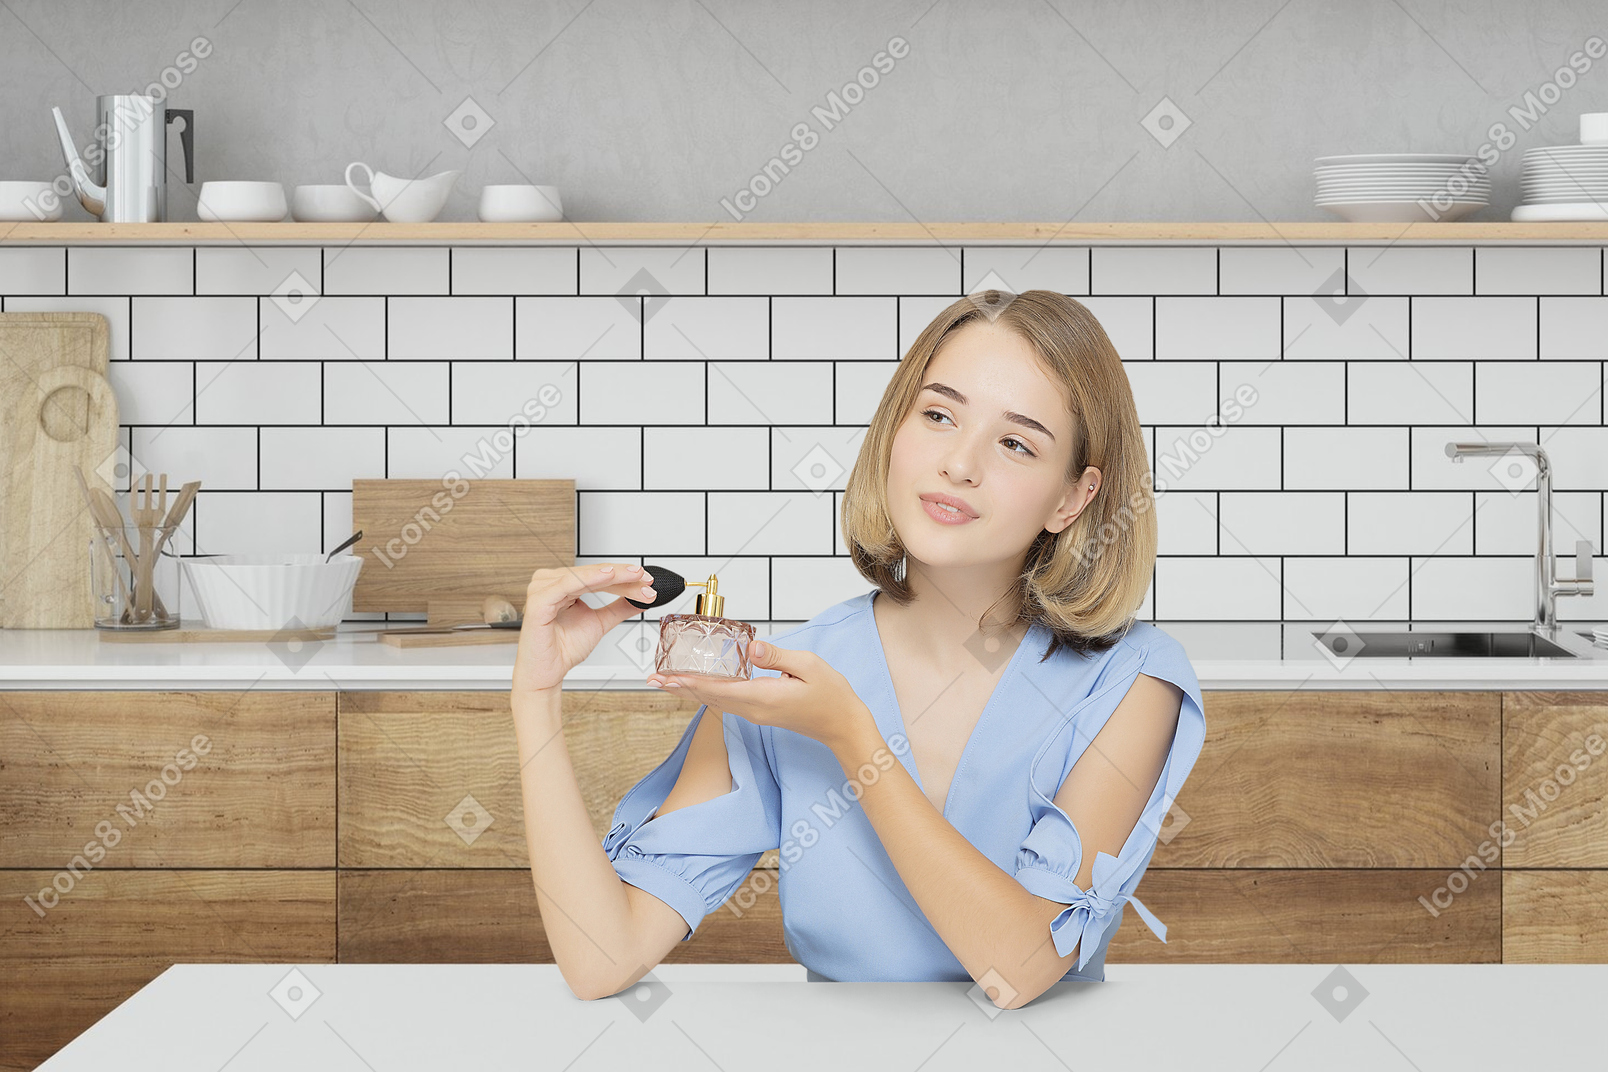 Giovane donna seduta in cucina e con in mano una bottiglia di profumo